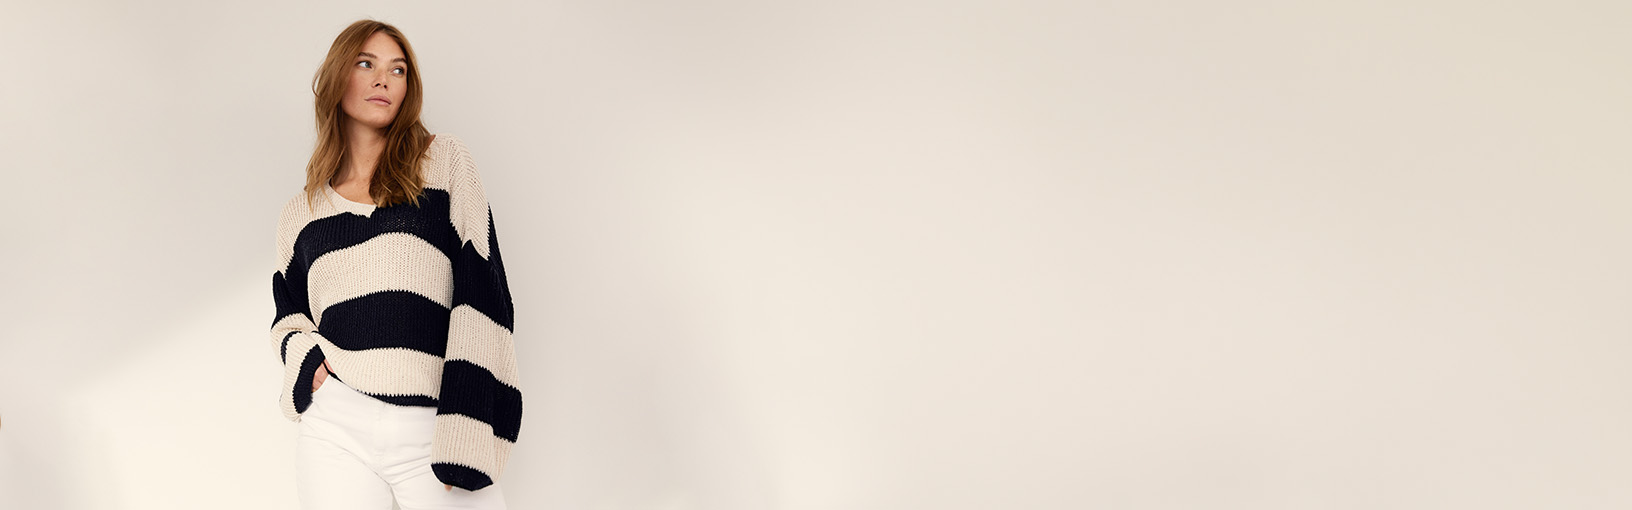 INOVATIVNO, ERGONOMSKO - NAJVIŠI KVALITET Lana Grossa Igle | Kružno pletenje iglice | Dizajnirajte drveni signal